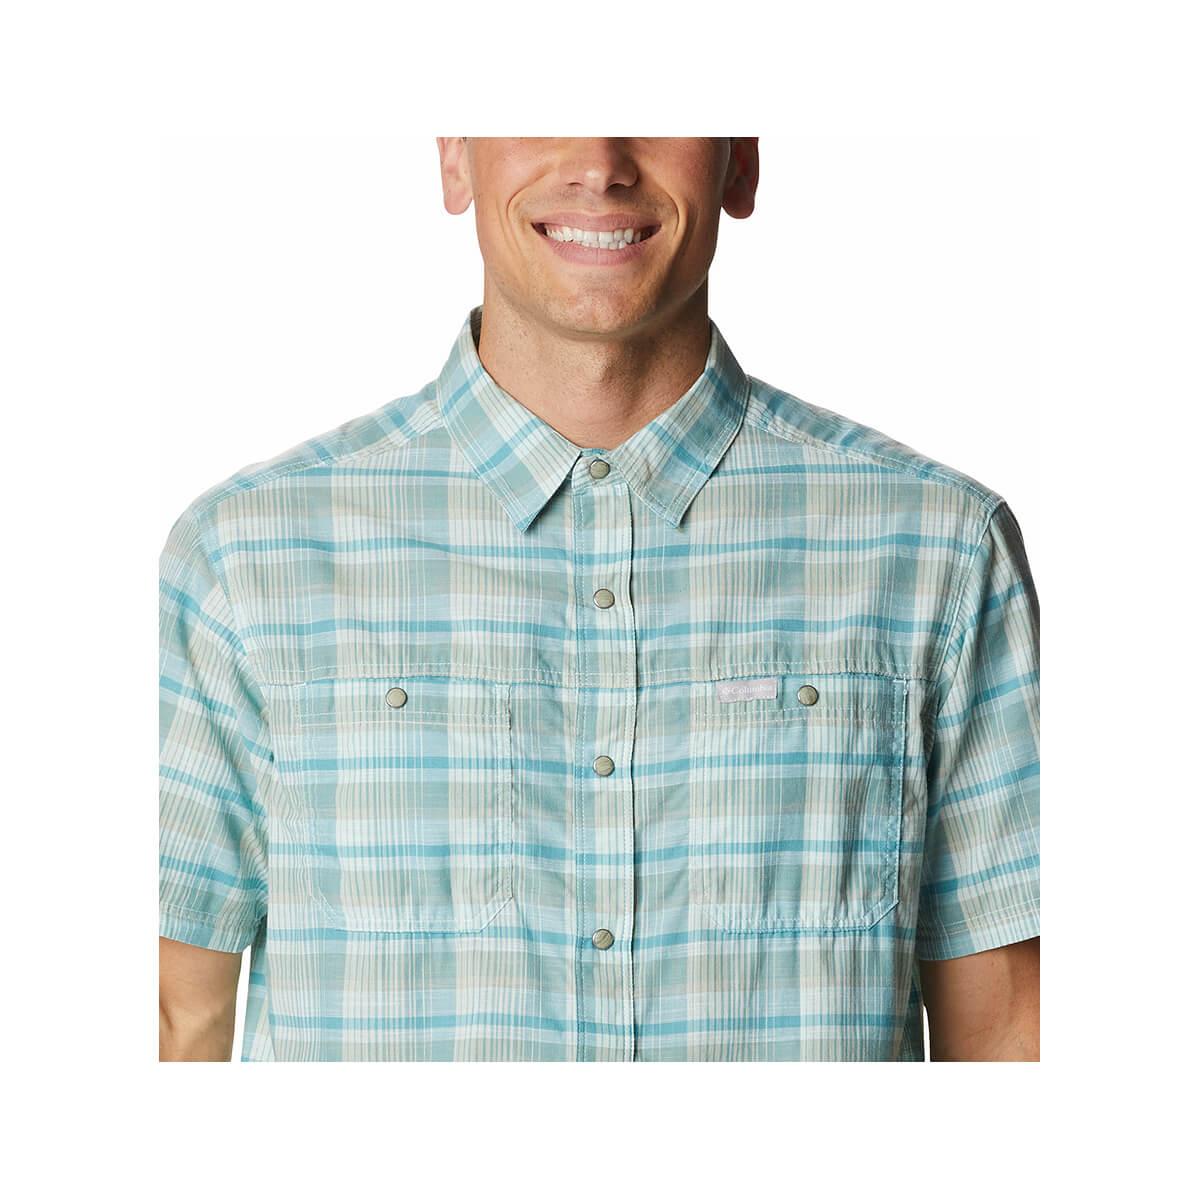  Men's Leadville Ridge Ii Short Sleeve Button Up Shirt